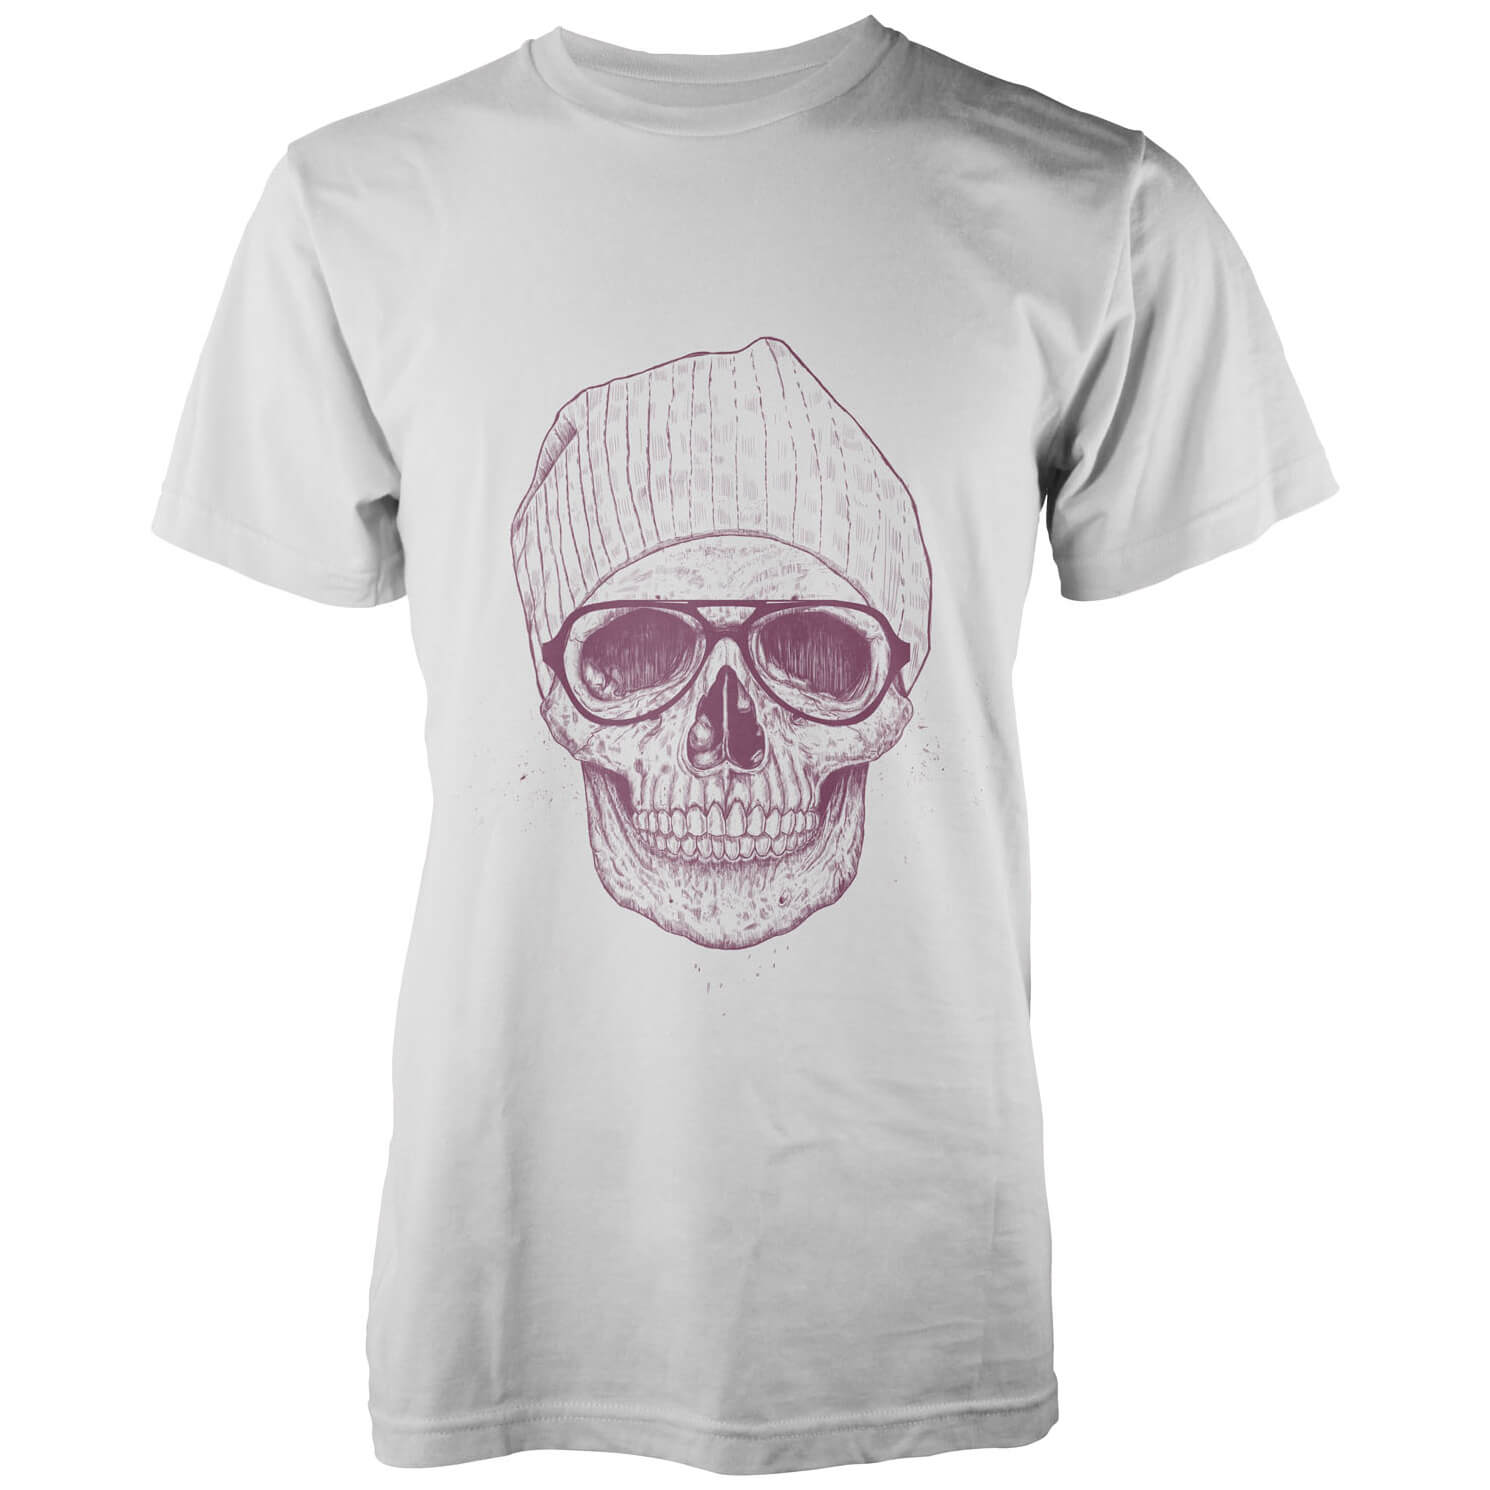 Balazs Solti Cool Skull White T-Shirt - S - White